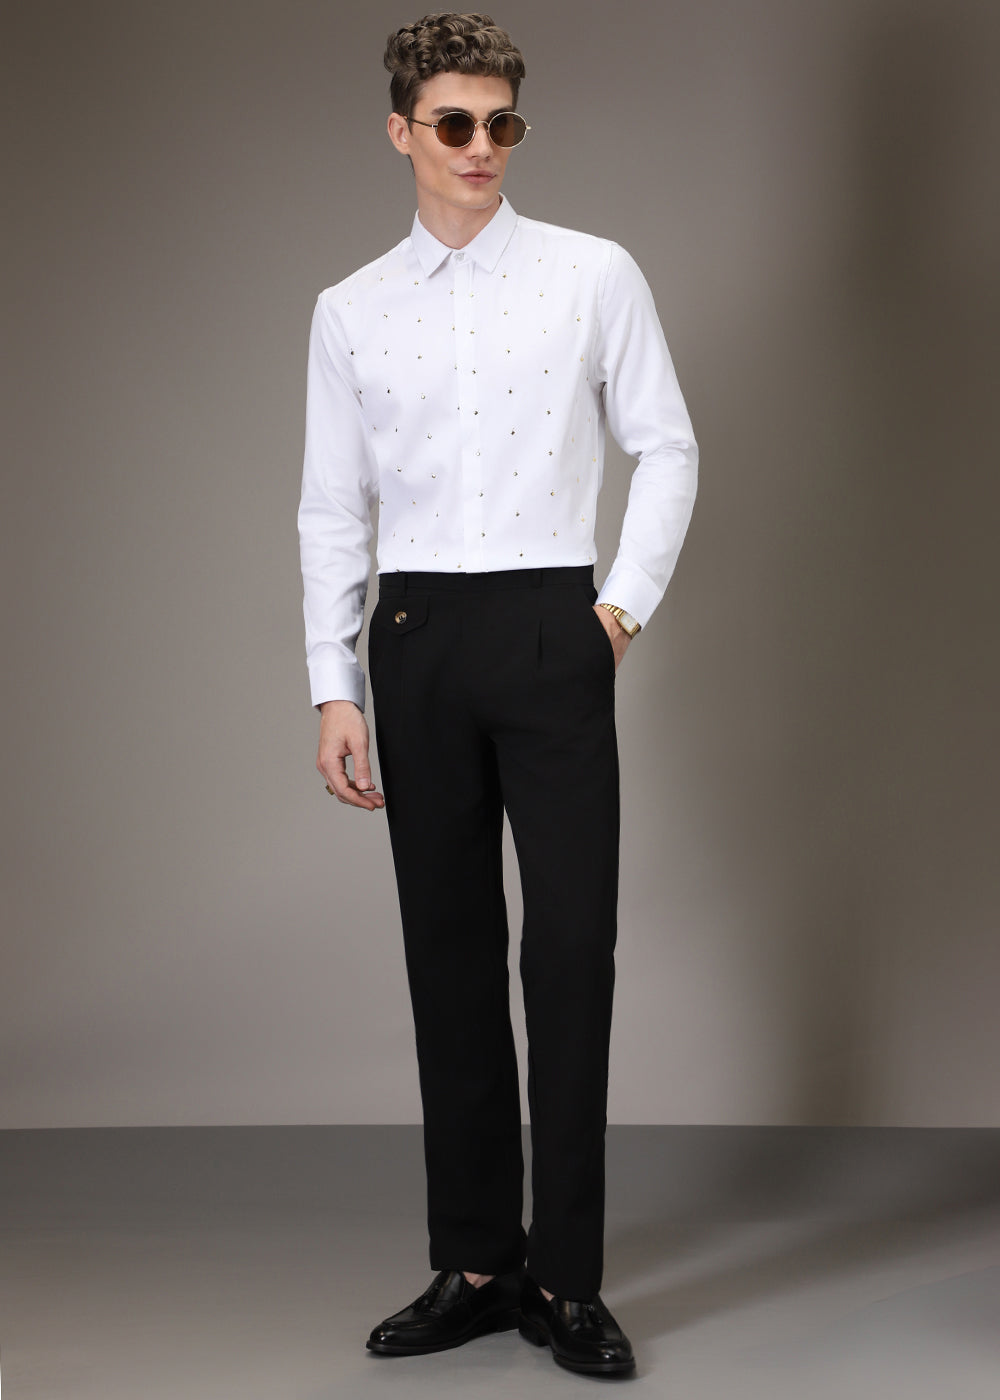 White Sparkler Designer Shirt